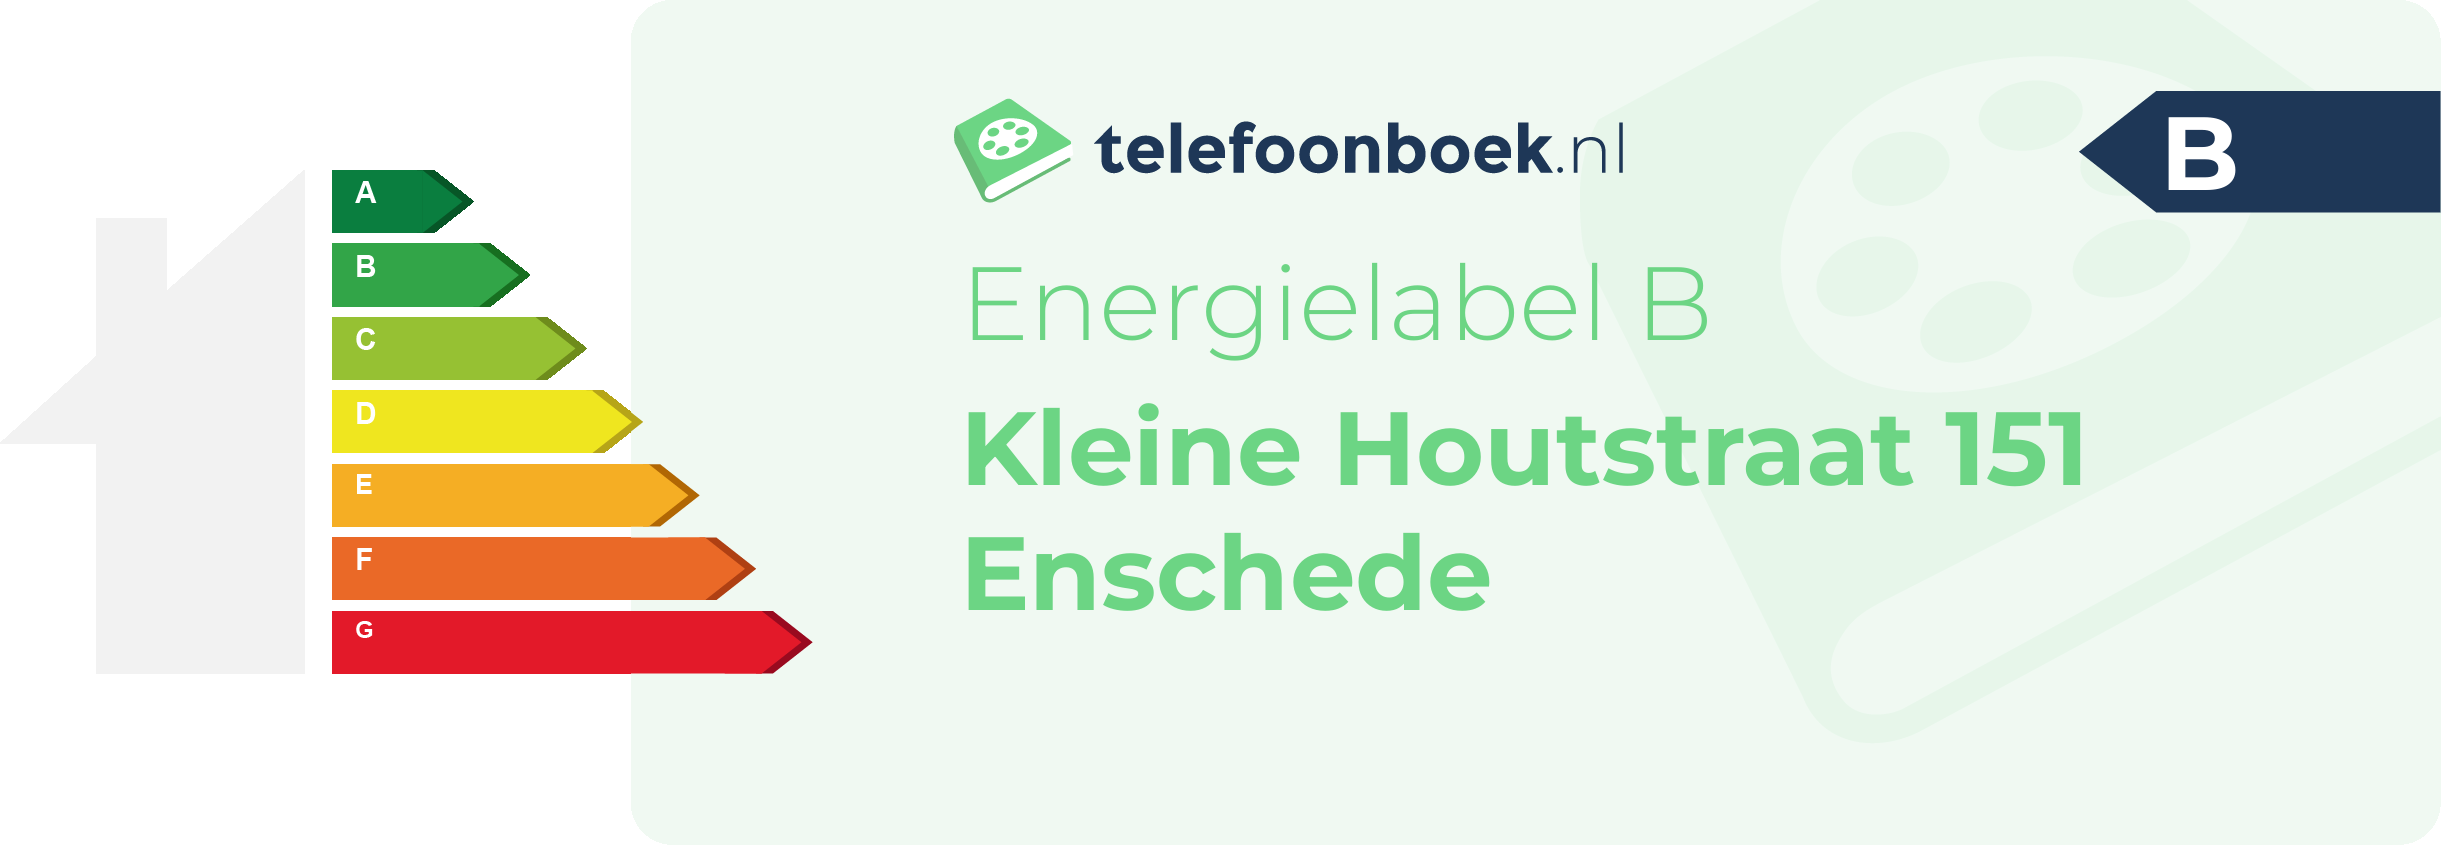 Energielabel Kleine Houtstraat 151 Enschede